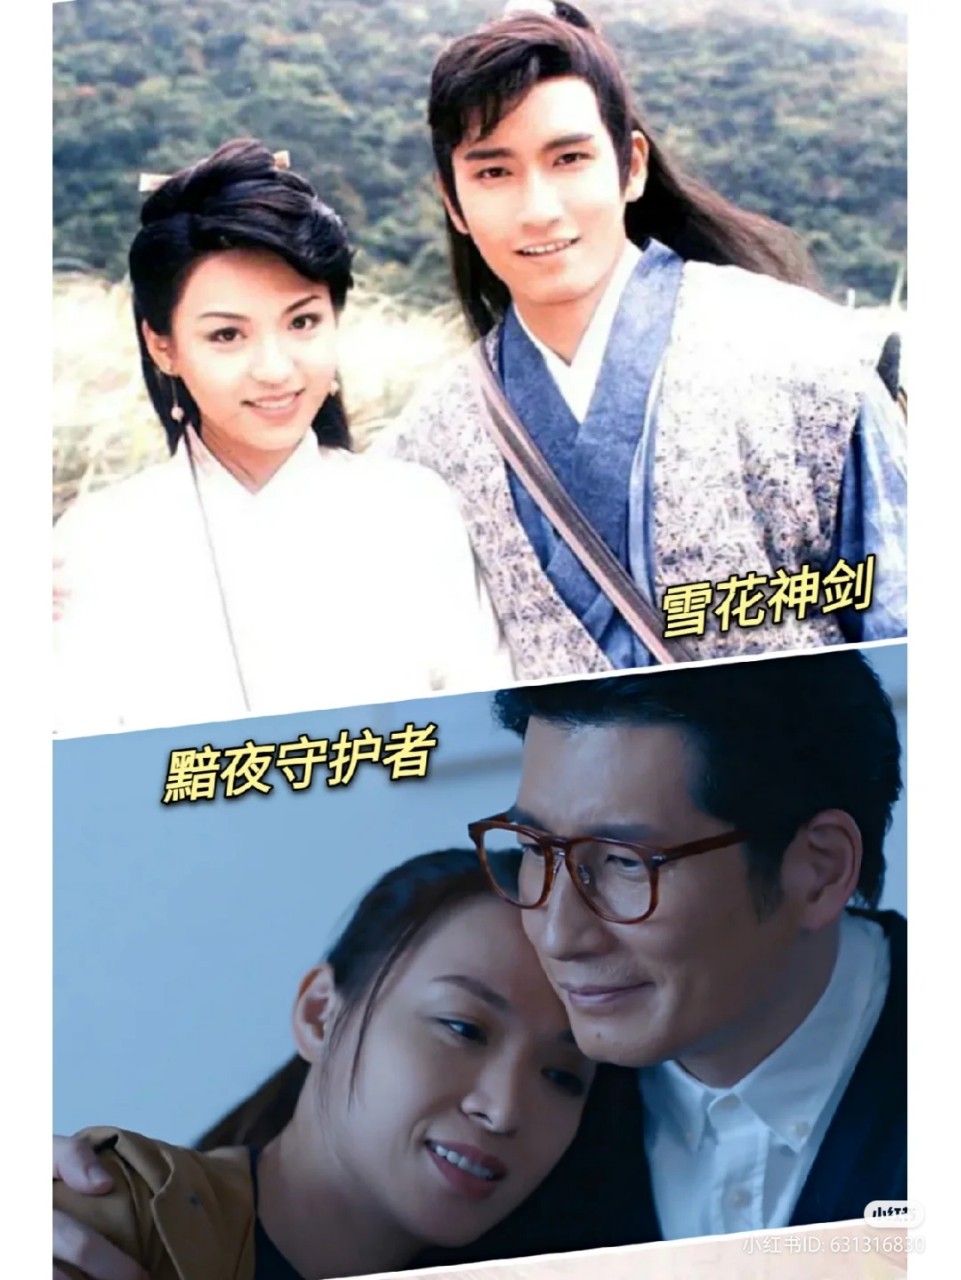 陳煒和袁文傑近日被瘋傳一張在1997年亞視劇集《雪山神劍》的同框照片。